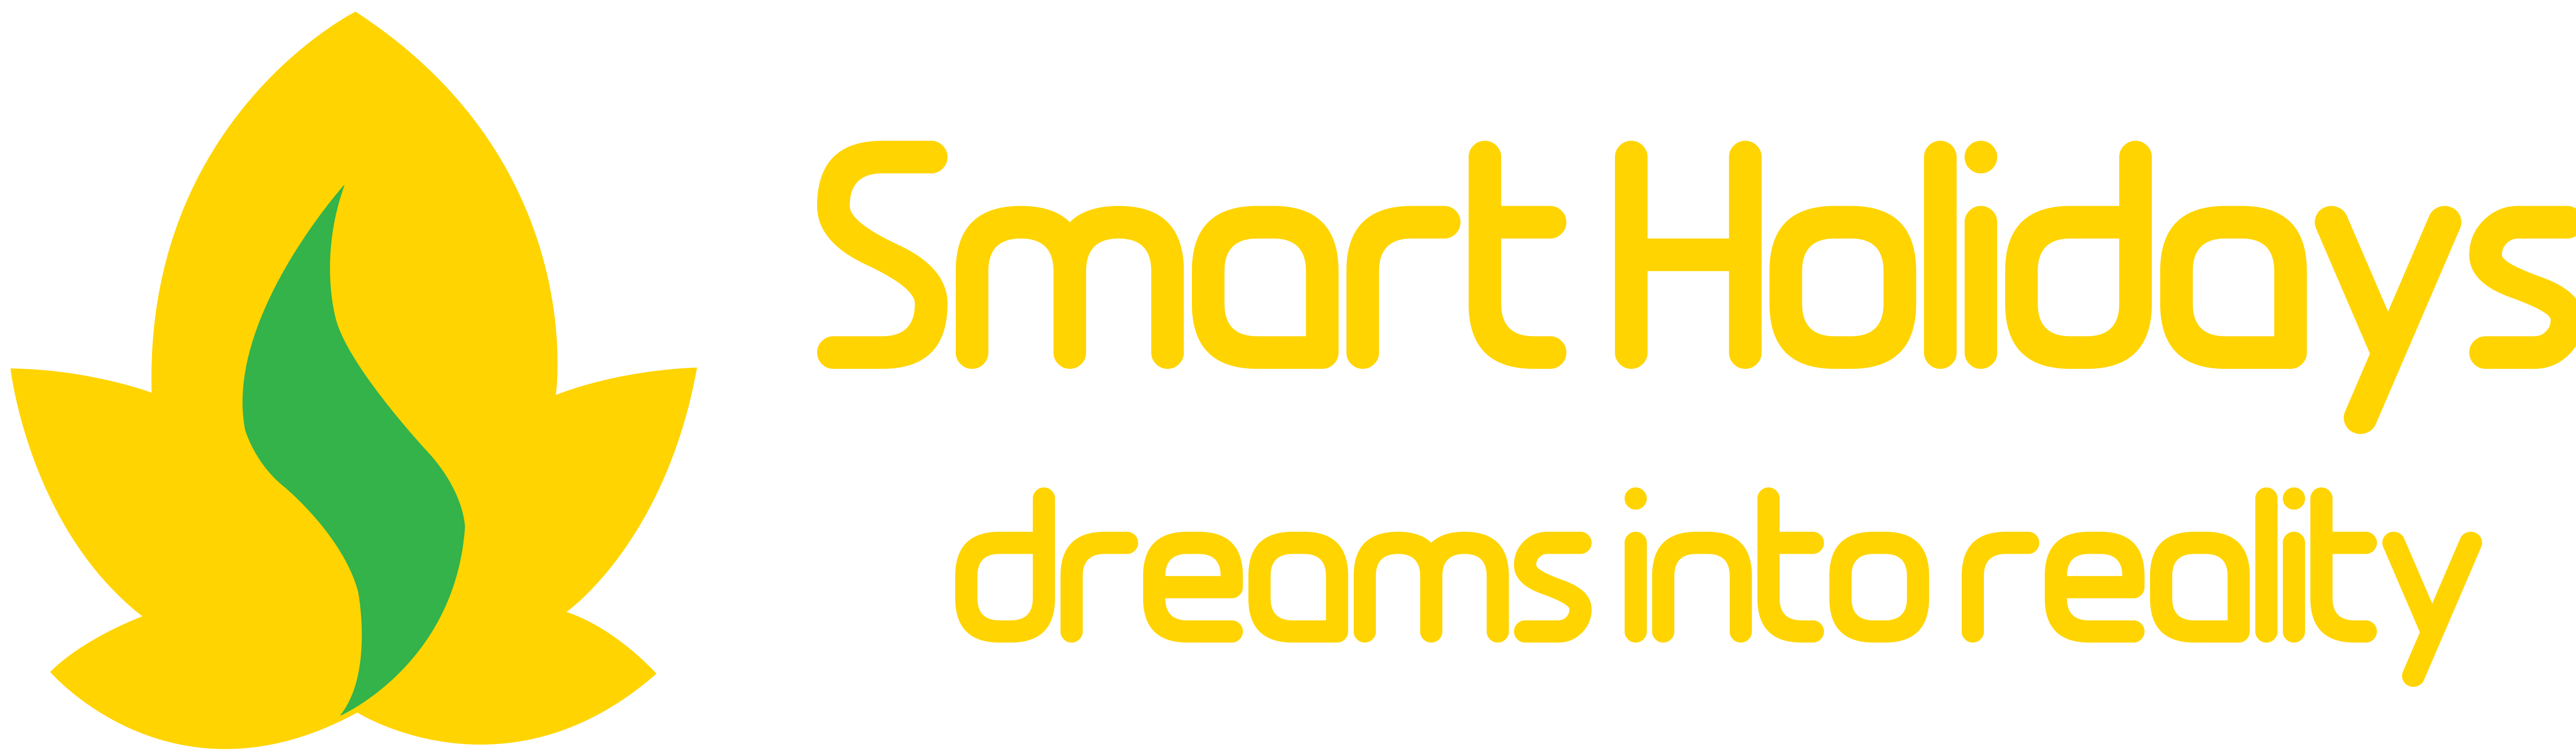 smartholidays logo